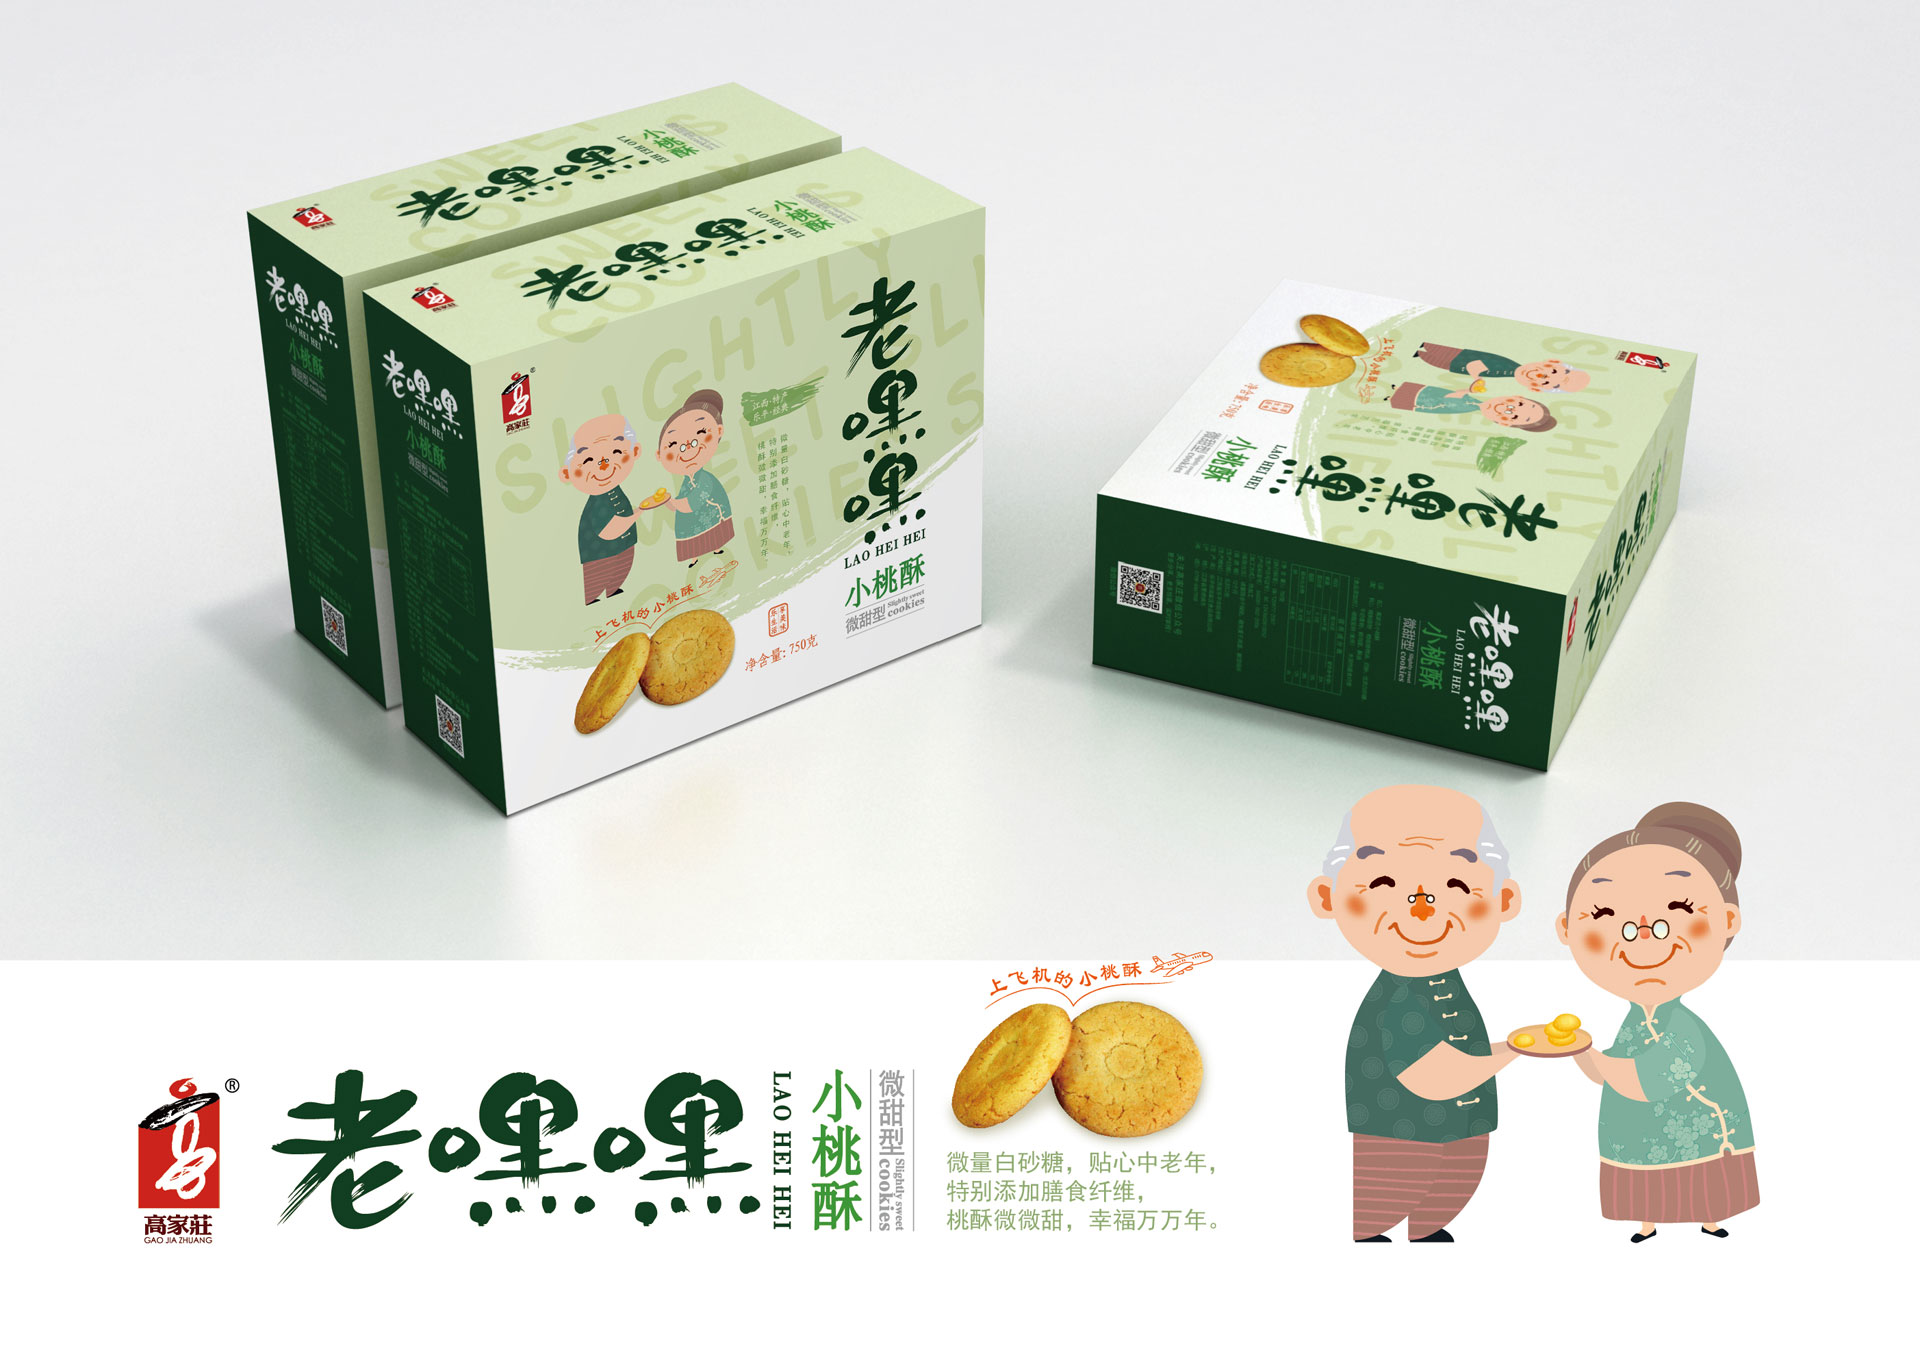 食品包装营销策划设计,包装设计,食品包装设计,上海包装设计公司